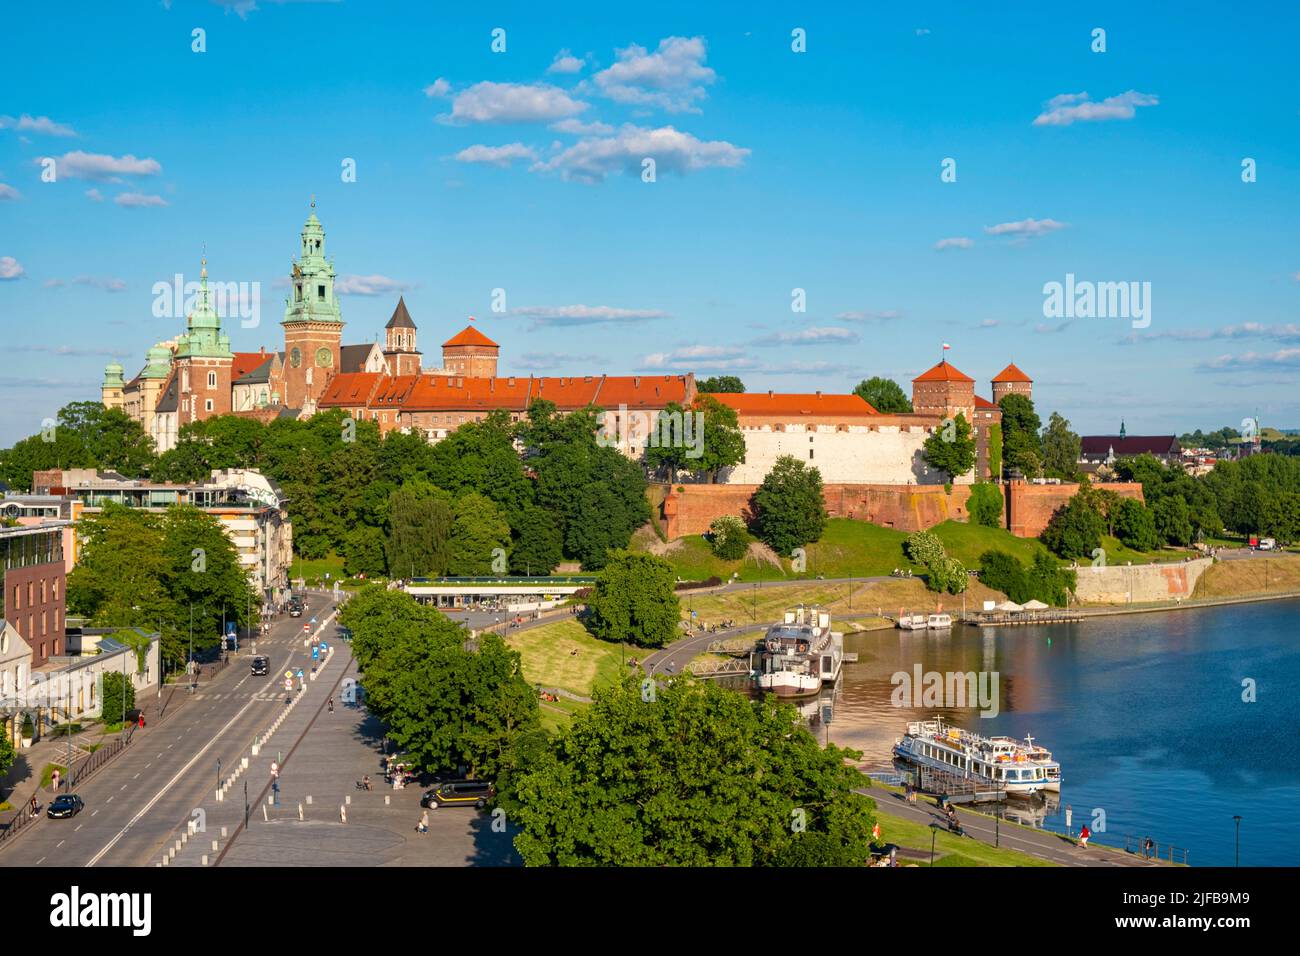 Pologne, petite Pologne, Cracovie, classée au patrimoine mondial de l'UNESCO, colline royale, château de Wawel sur les rives de la Vistule Banque D'Images